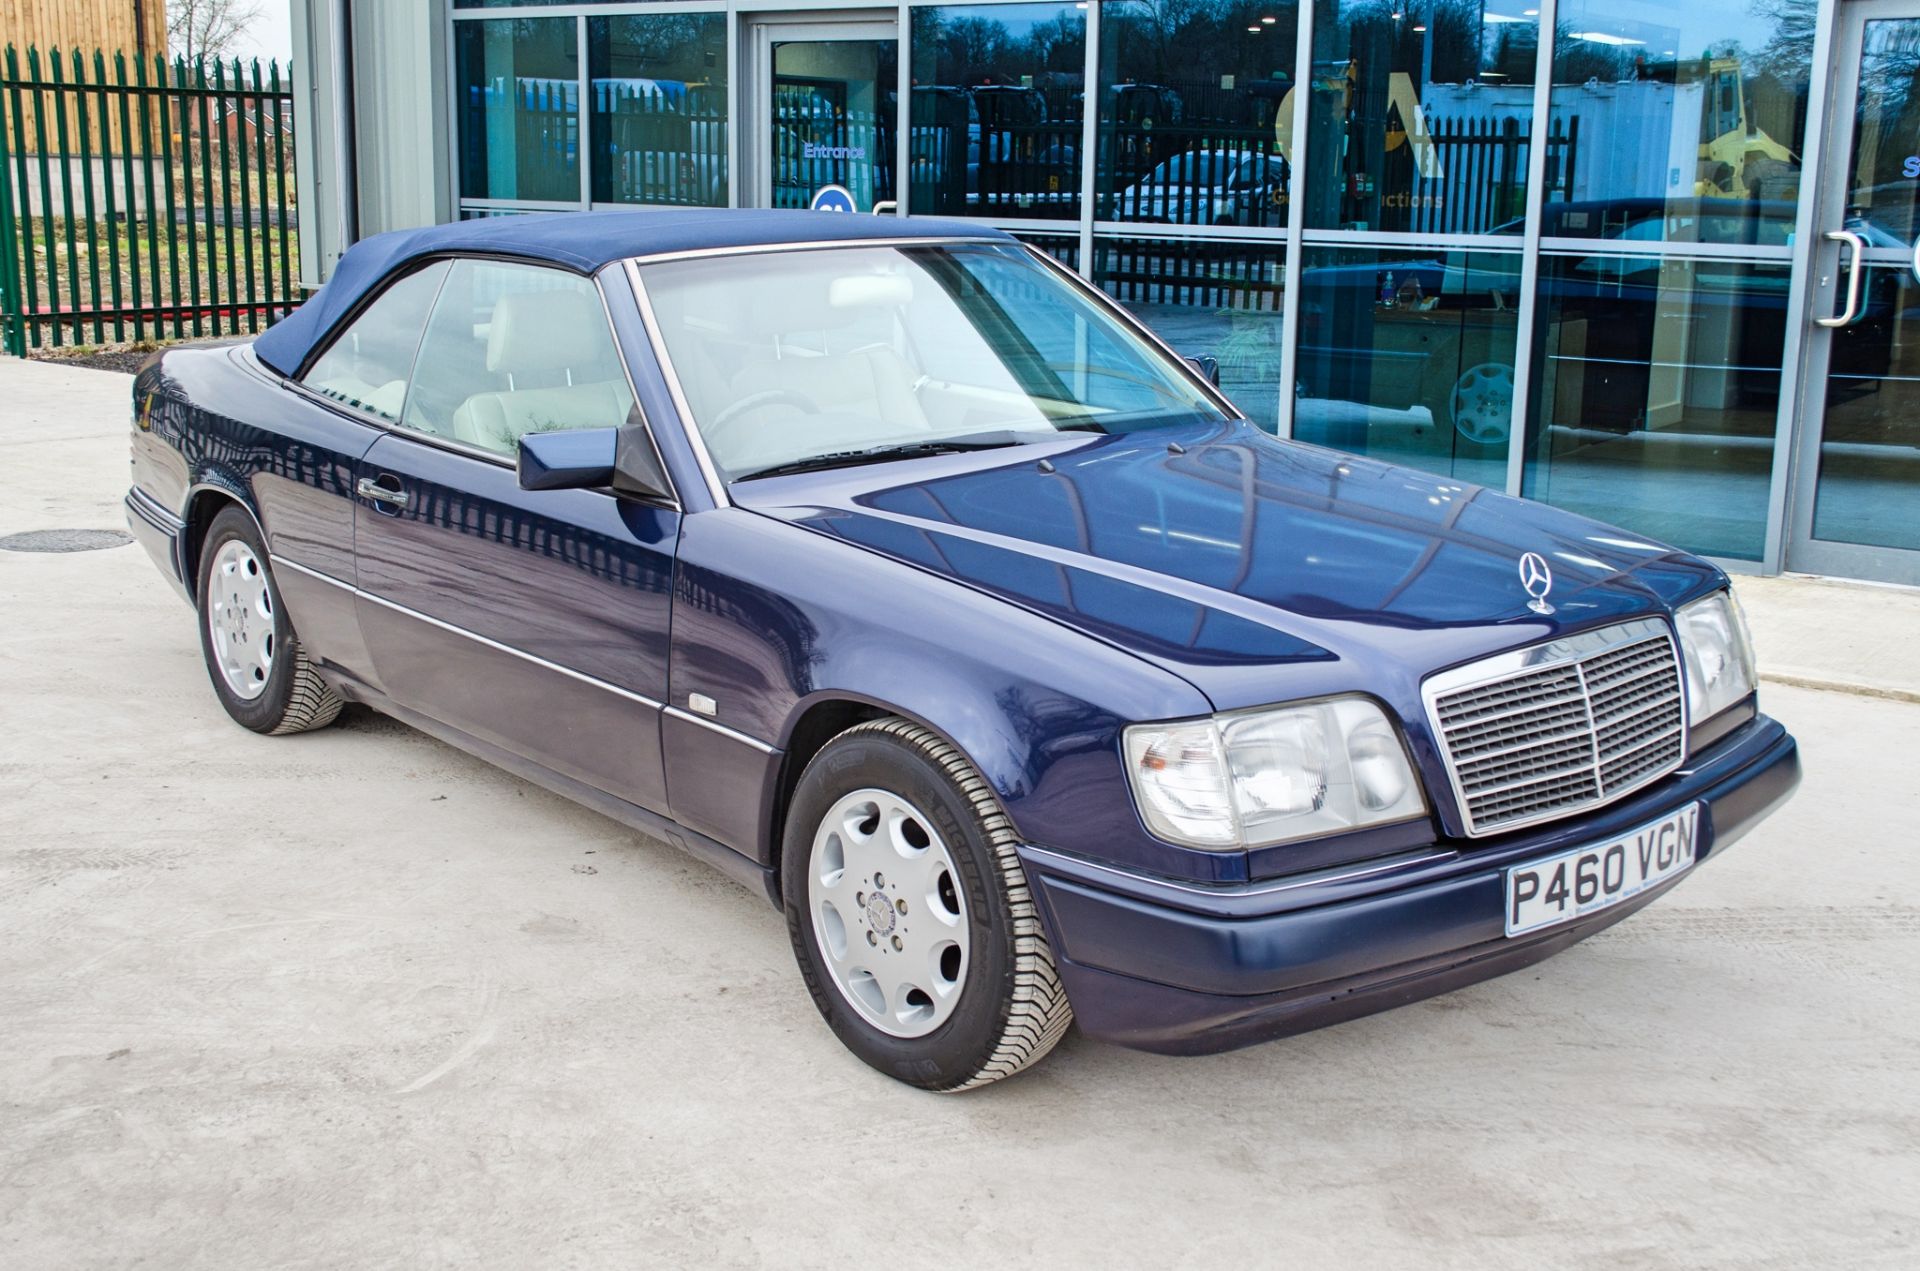 1997 Mercedes E220 2.2 litre 2 door cabriolet Registration: P460VGN Chassis: WDB1240622C292059 - Image 25 of 60